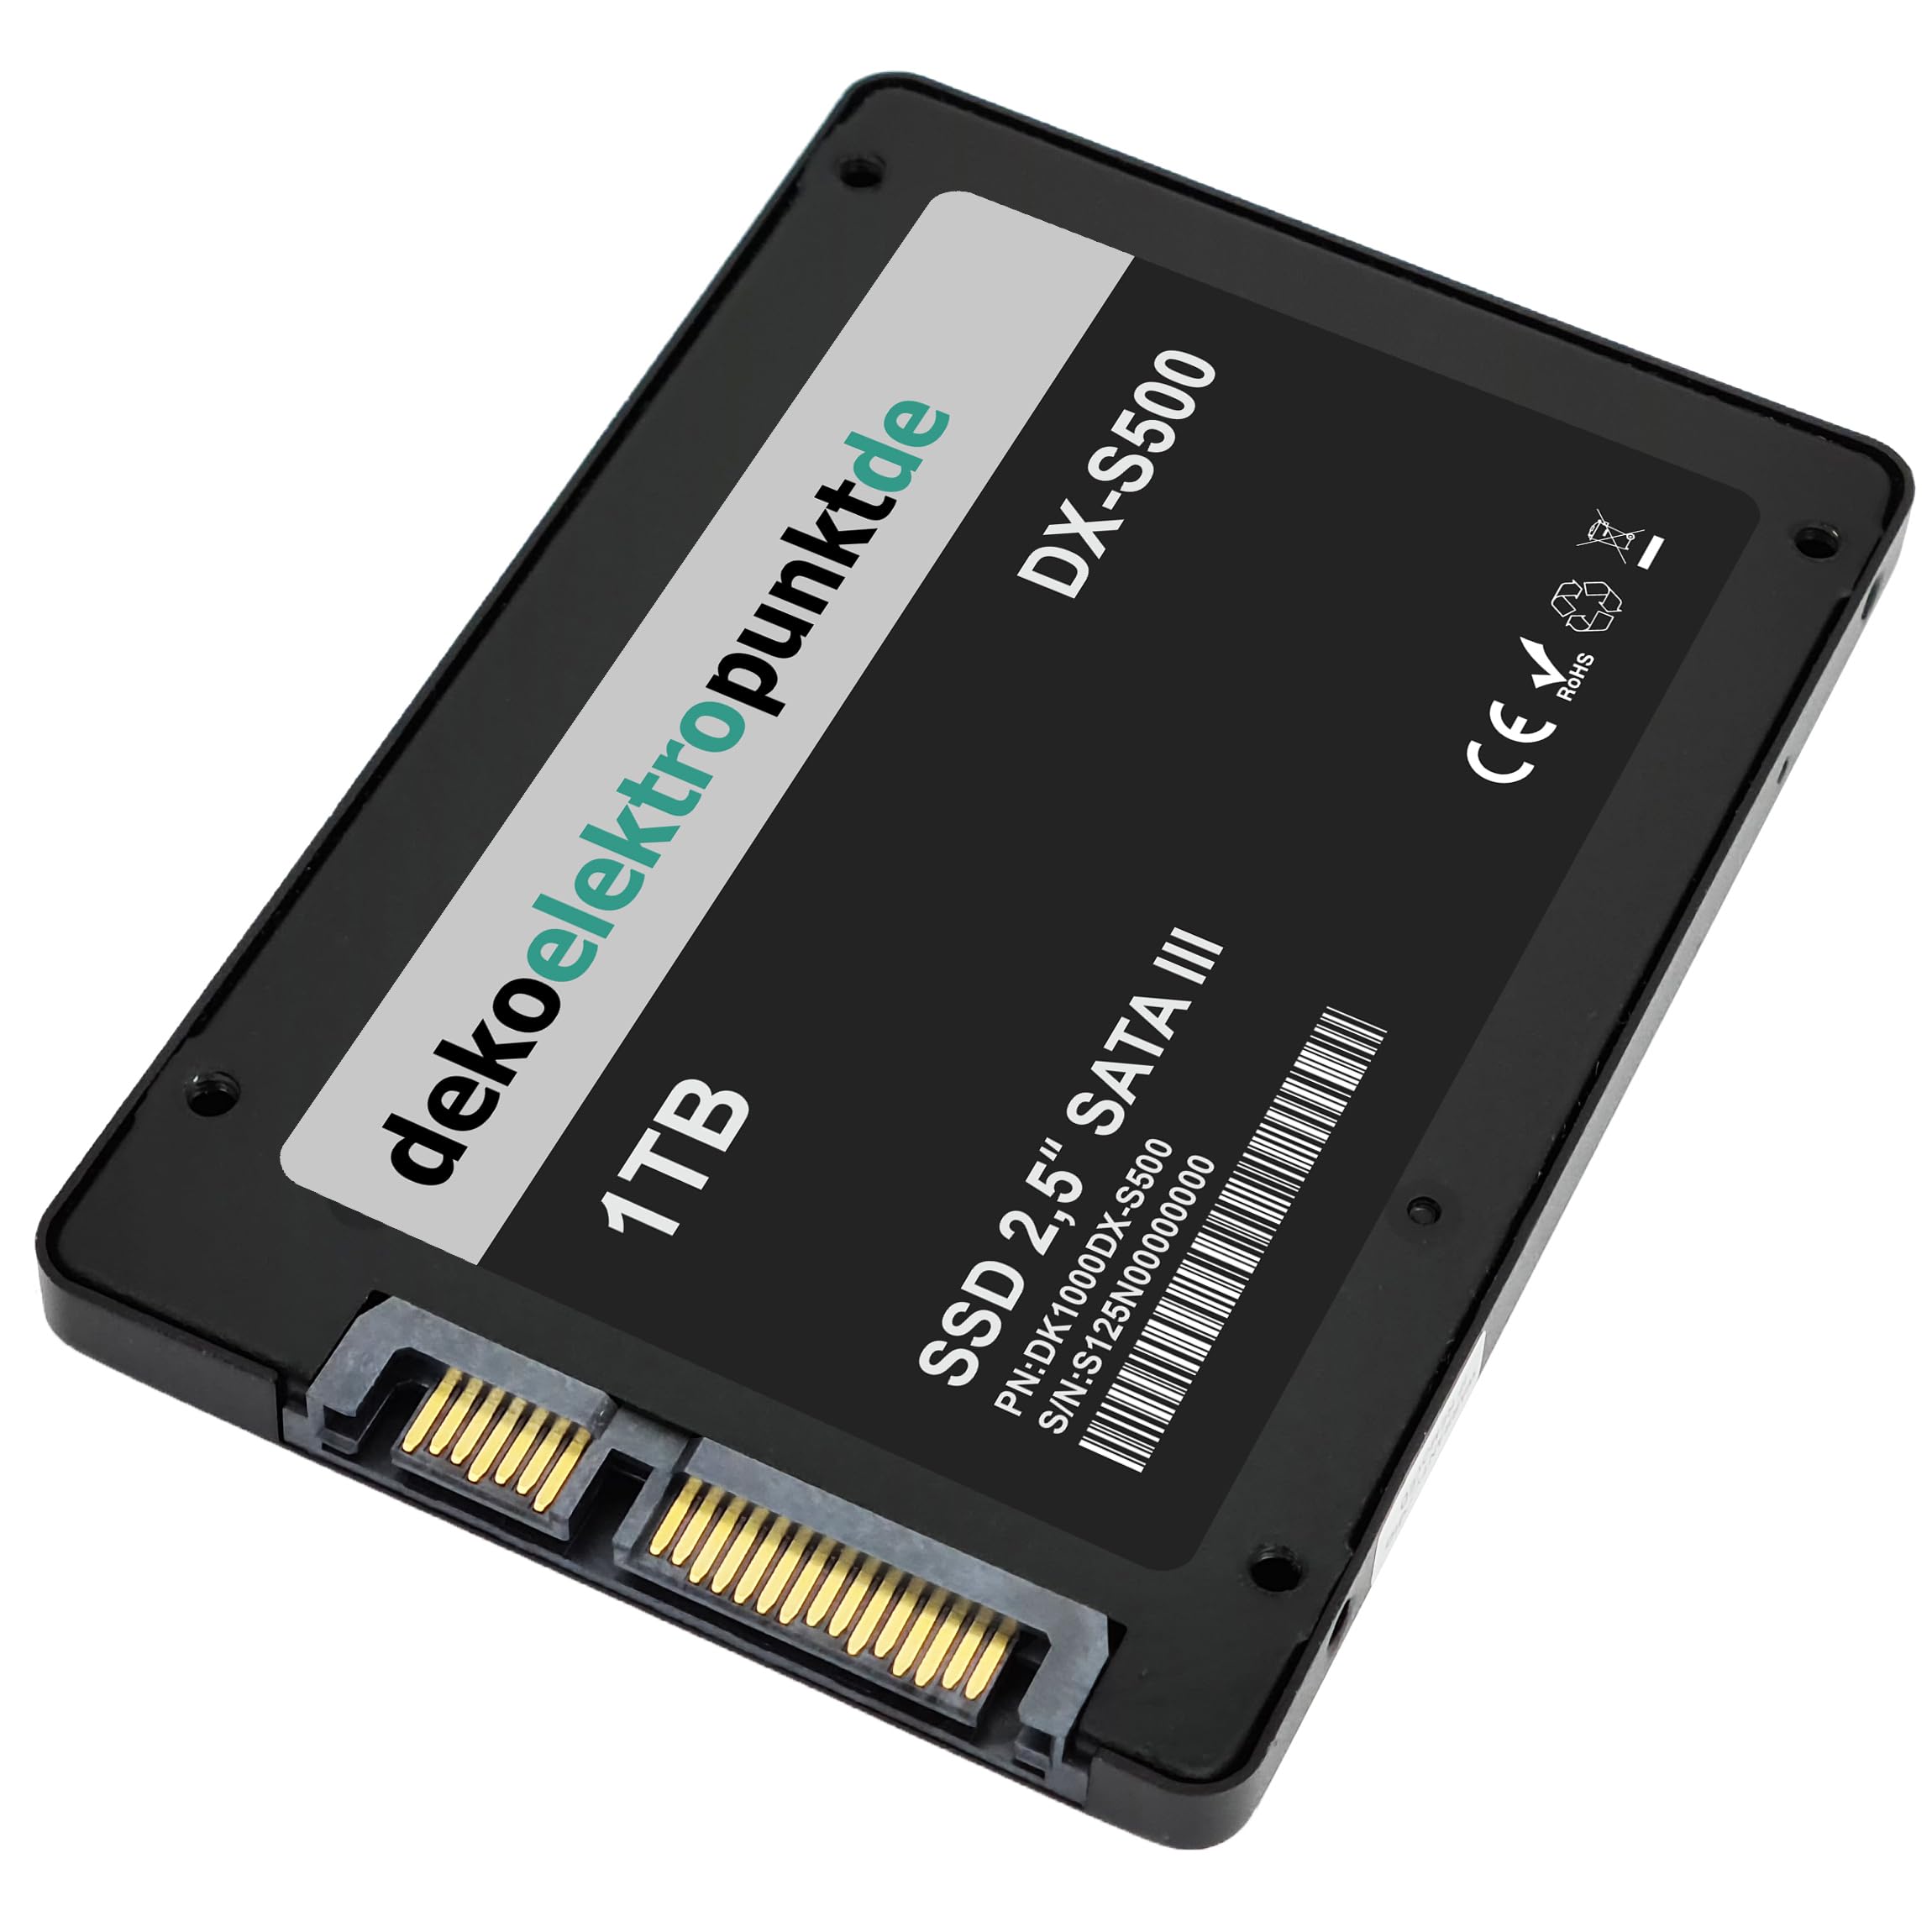 dekoelektropunktde 1TB SSD Festplatte passend für Toshiba Qosmio G45-AV680, Alternatives Ersatzteil